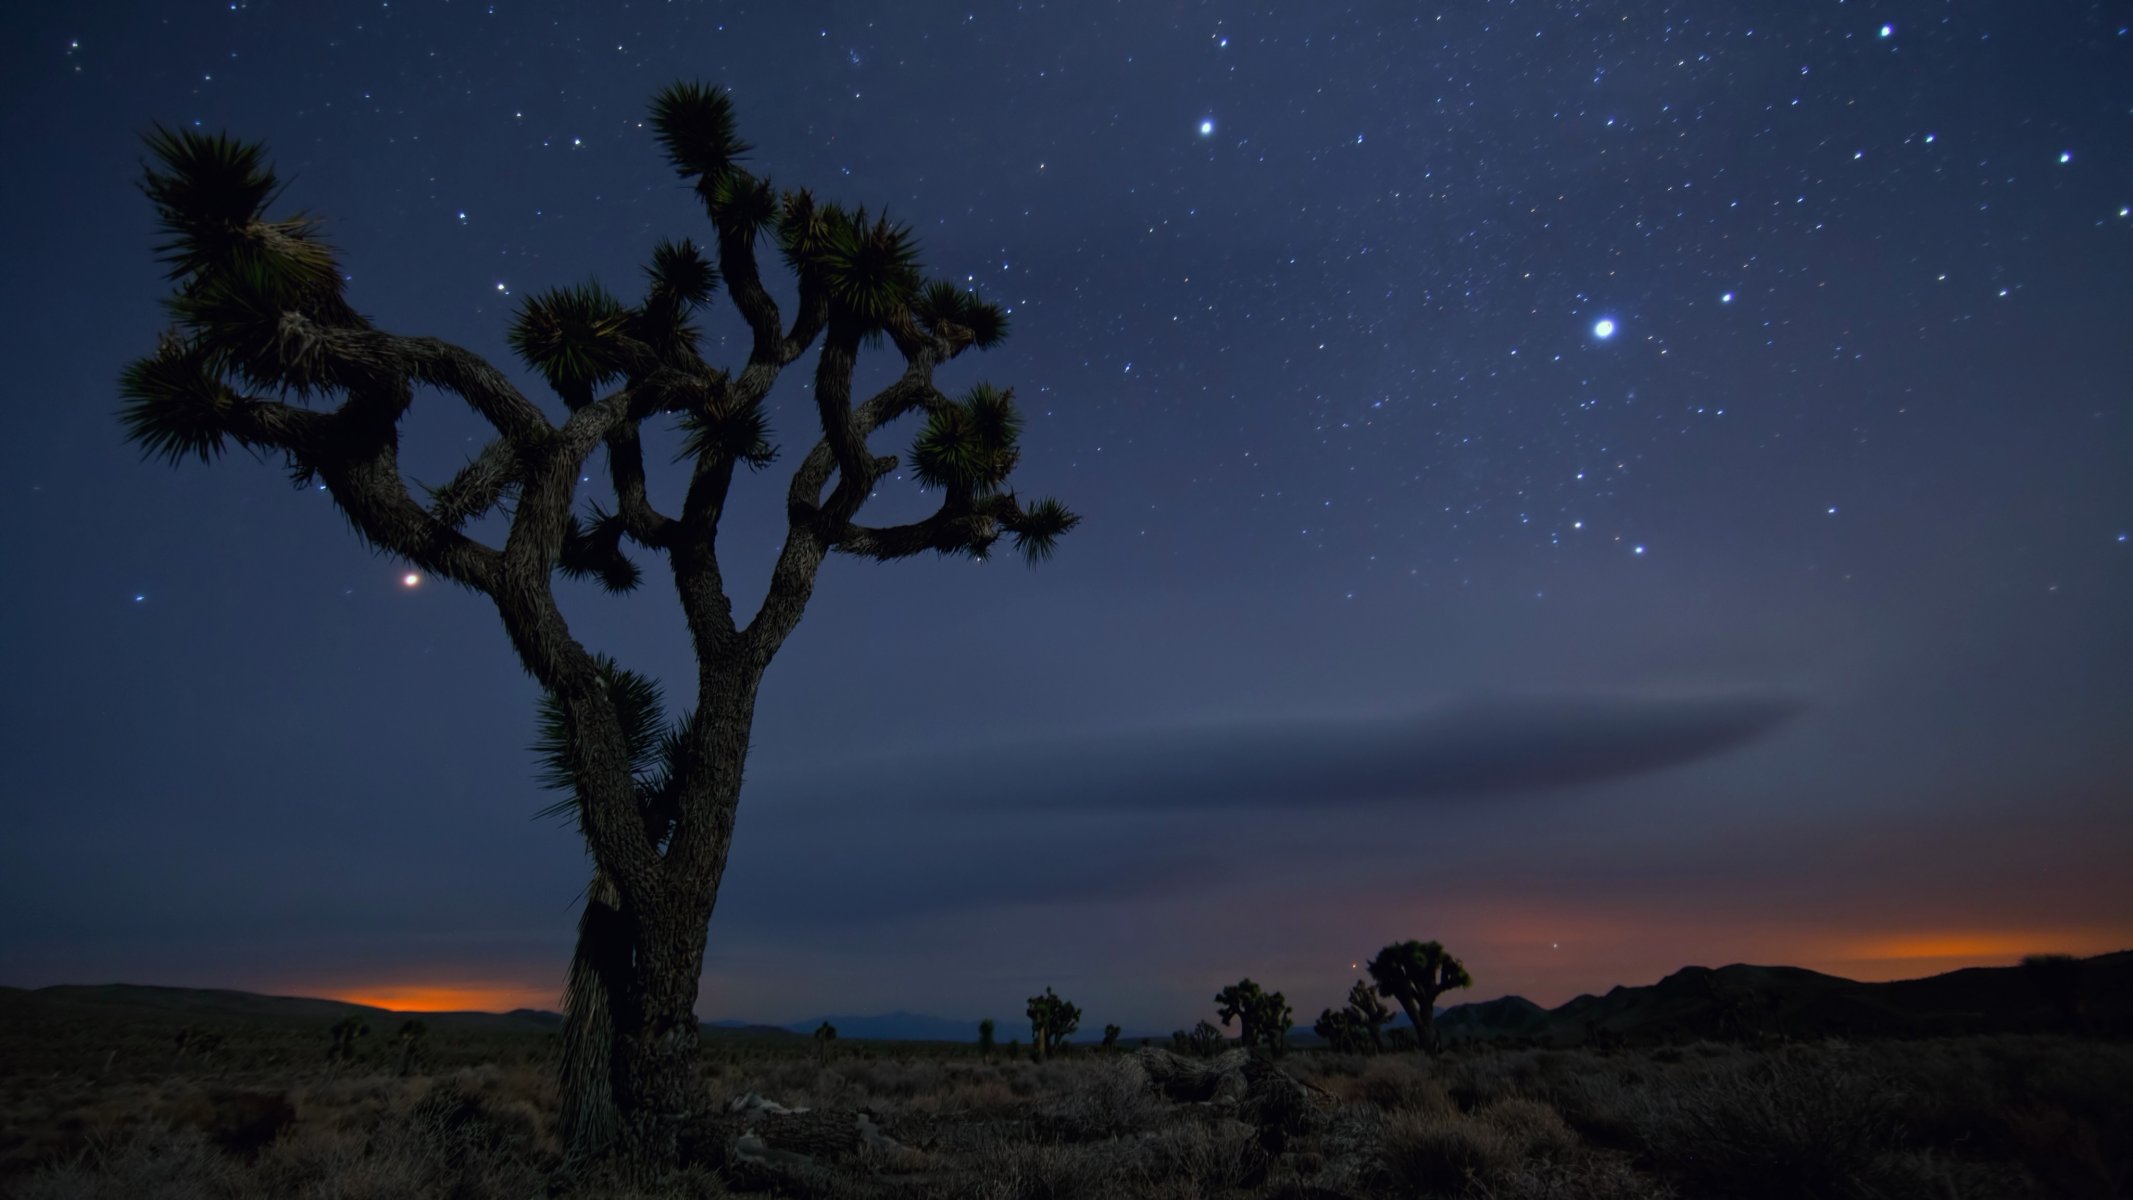 joshua tree national park калифорния пустыня песок дерево мексика сша ночь